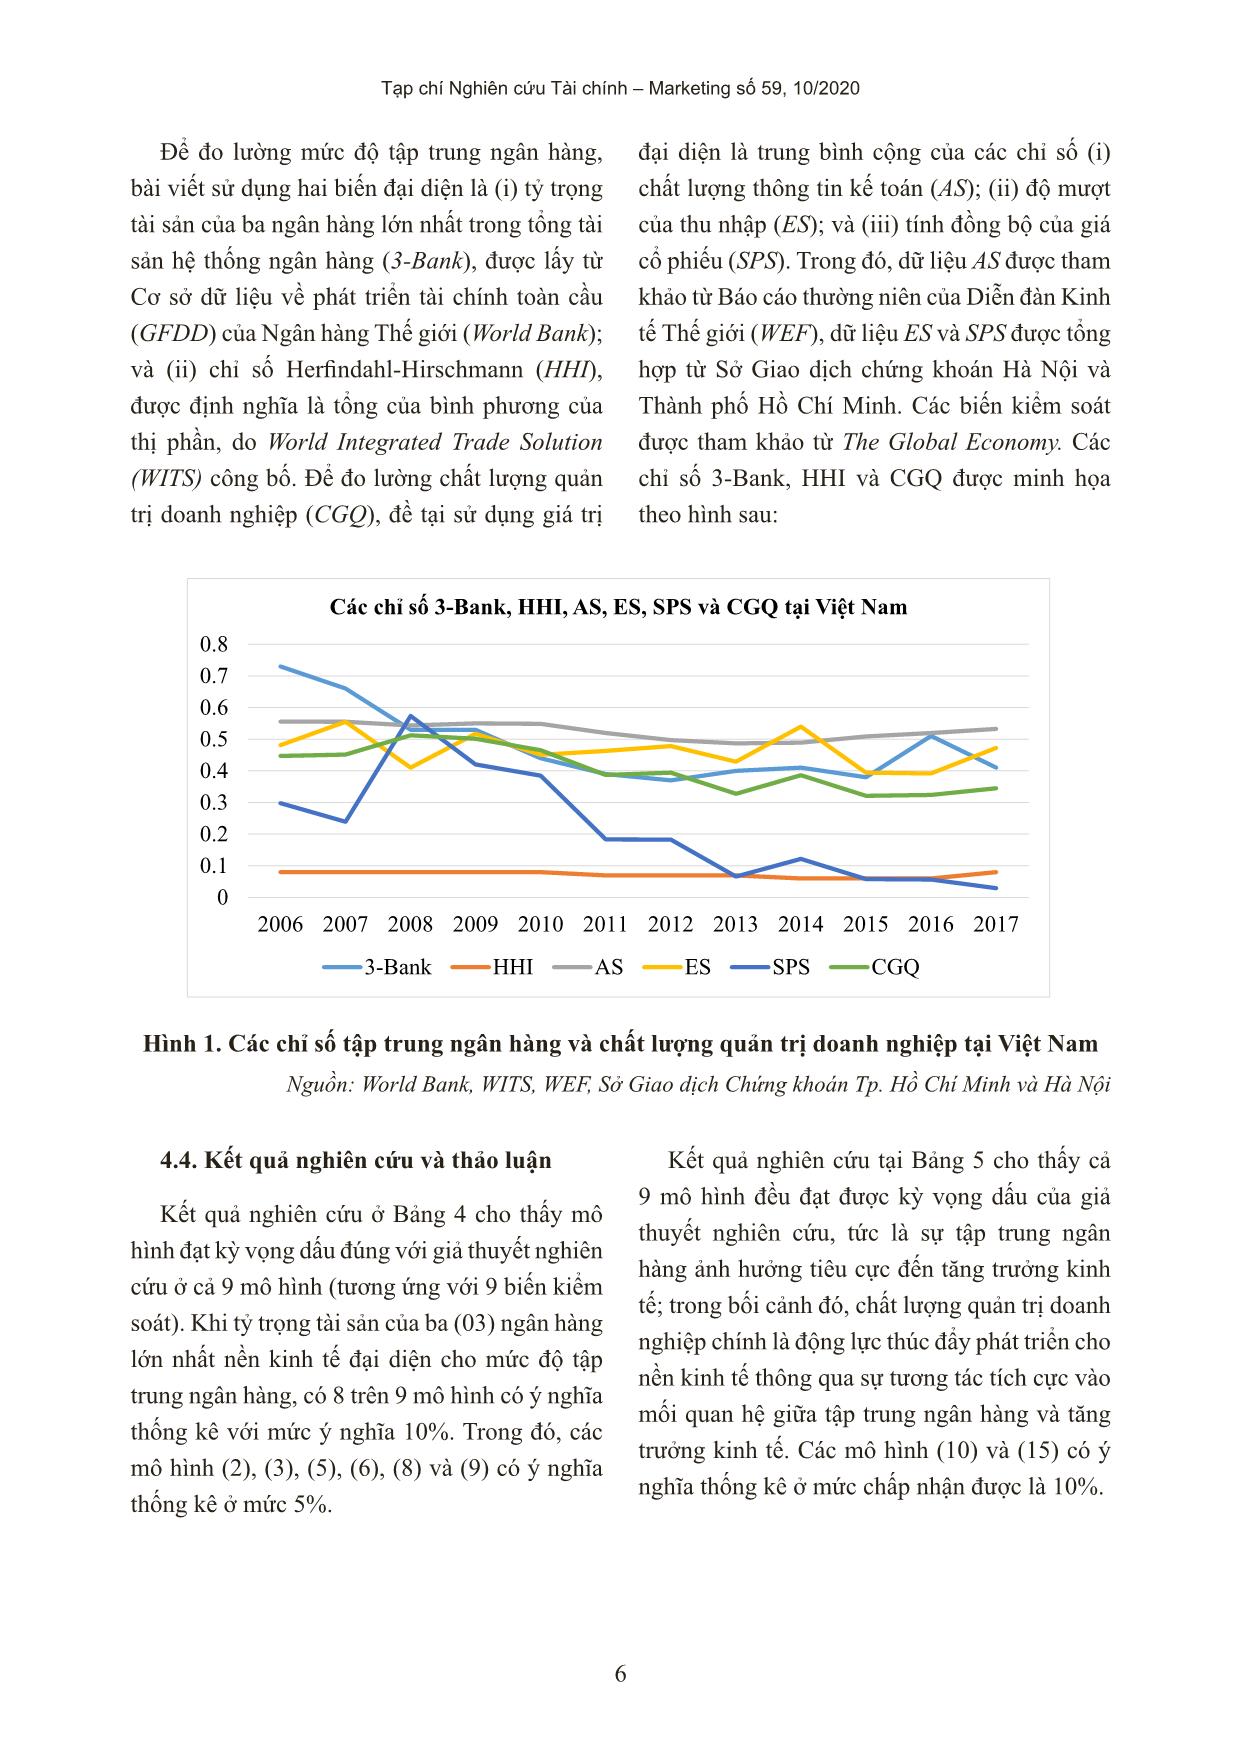 Mối quan hệ giữa chất lượng quản trị doanh nghiệp, mức độ tập trung ngân hàng và tăng trưởng kinh tế ở Việt Nam trang 6